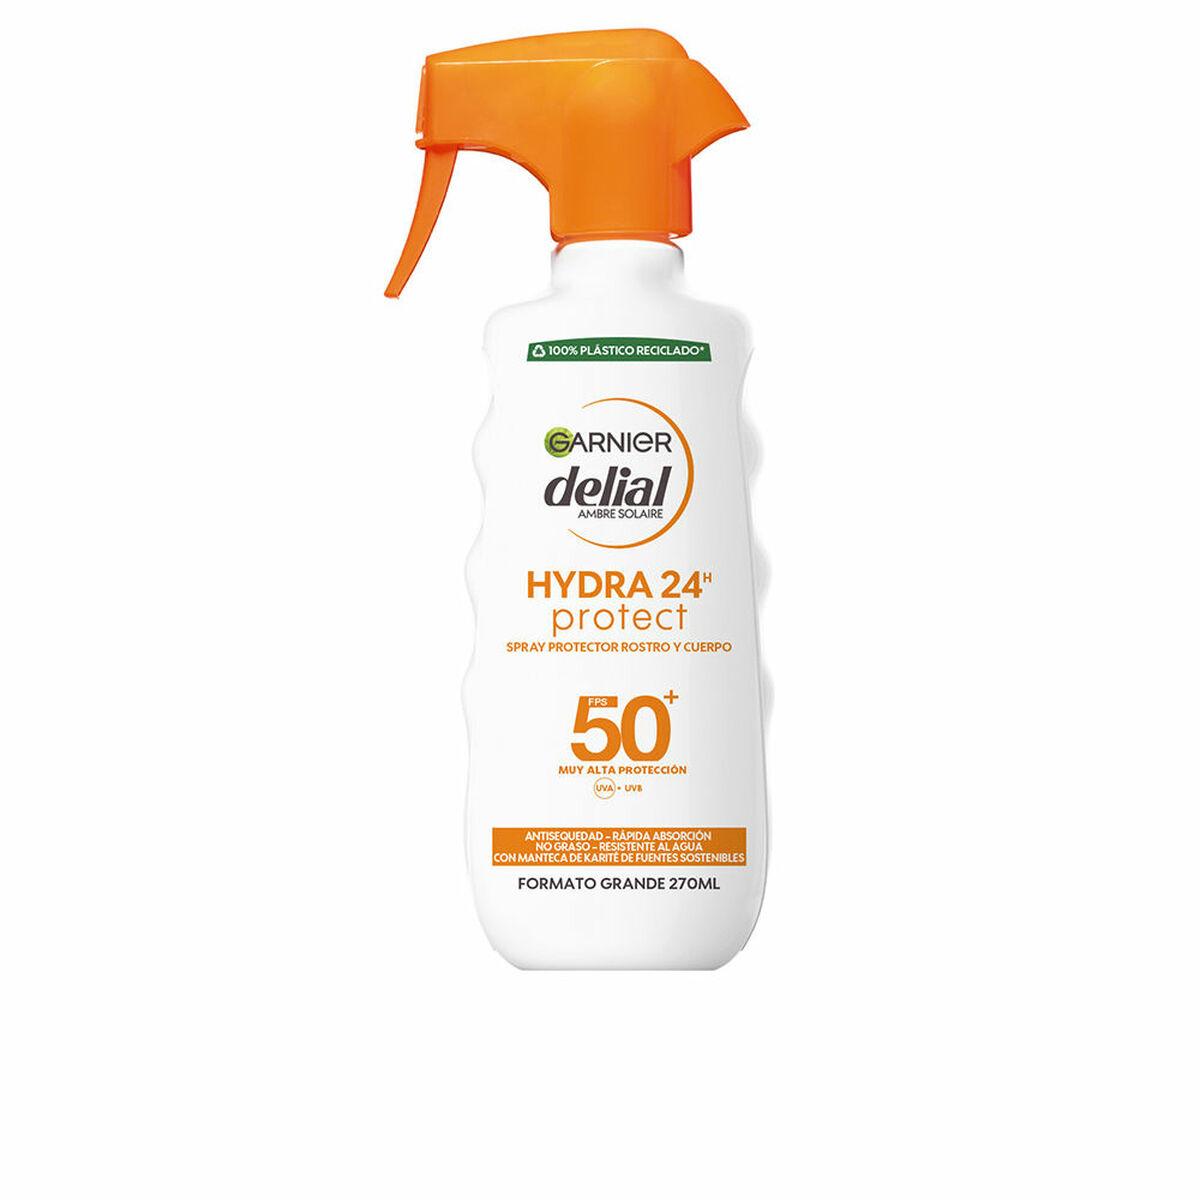 Krop solcreme spray Garnier Hydra 24 Protect Spf 50 (270 ml)